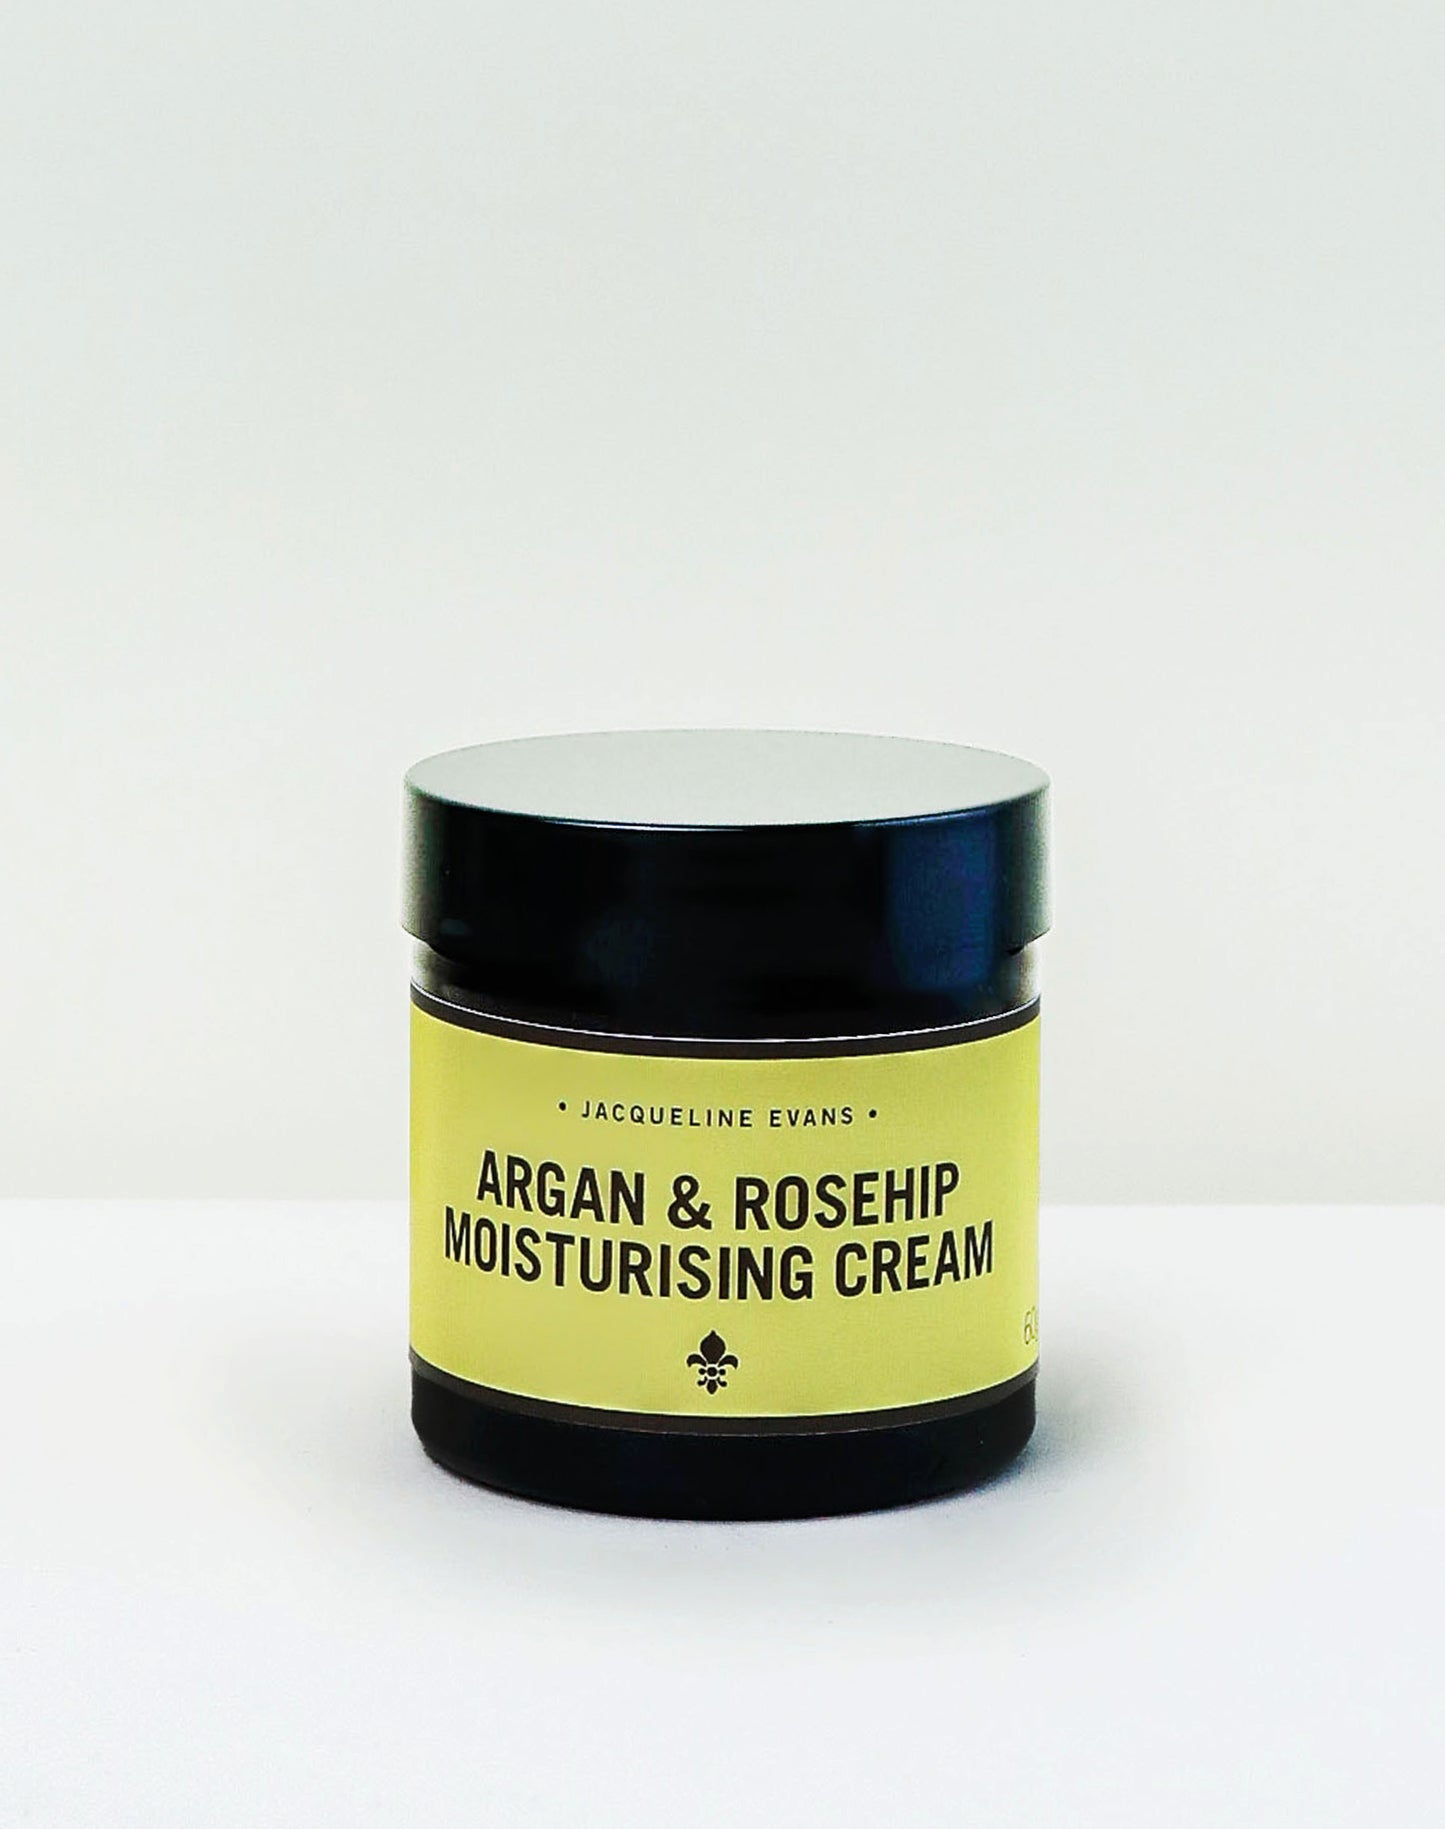 Argan & Rosehip Moisturising Cream